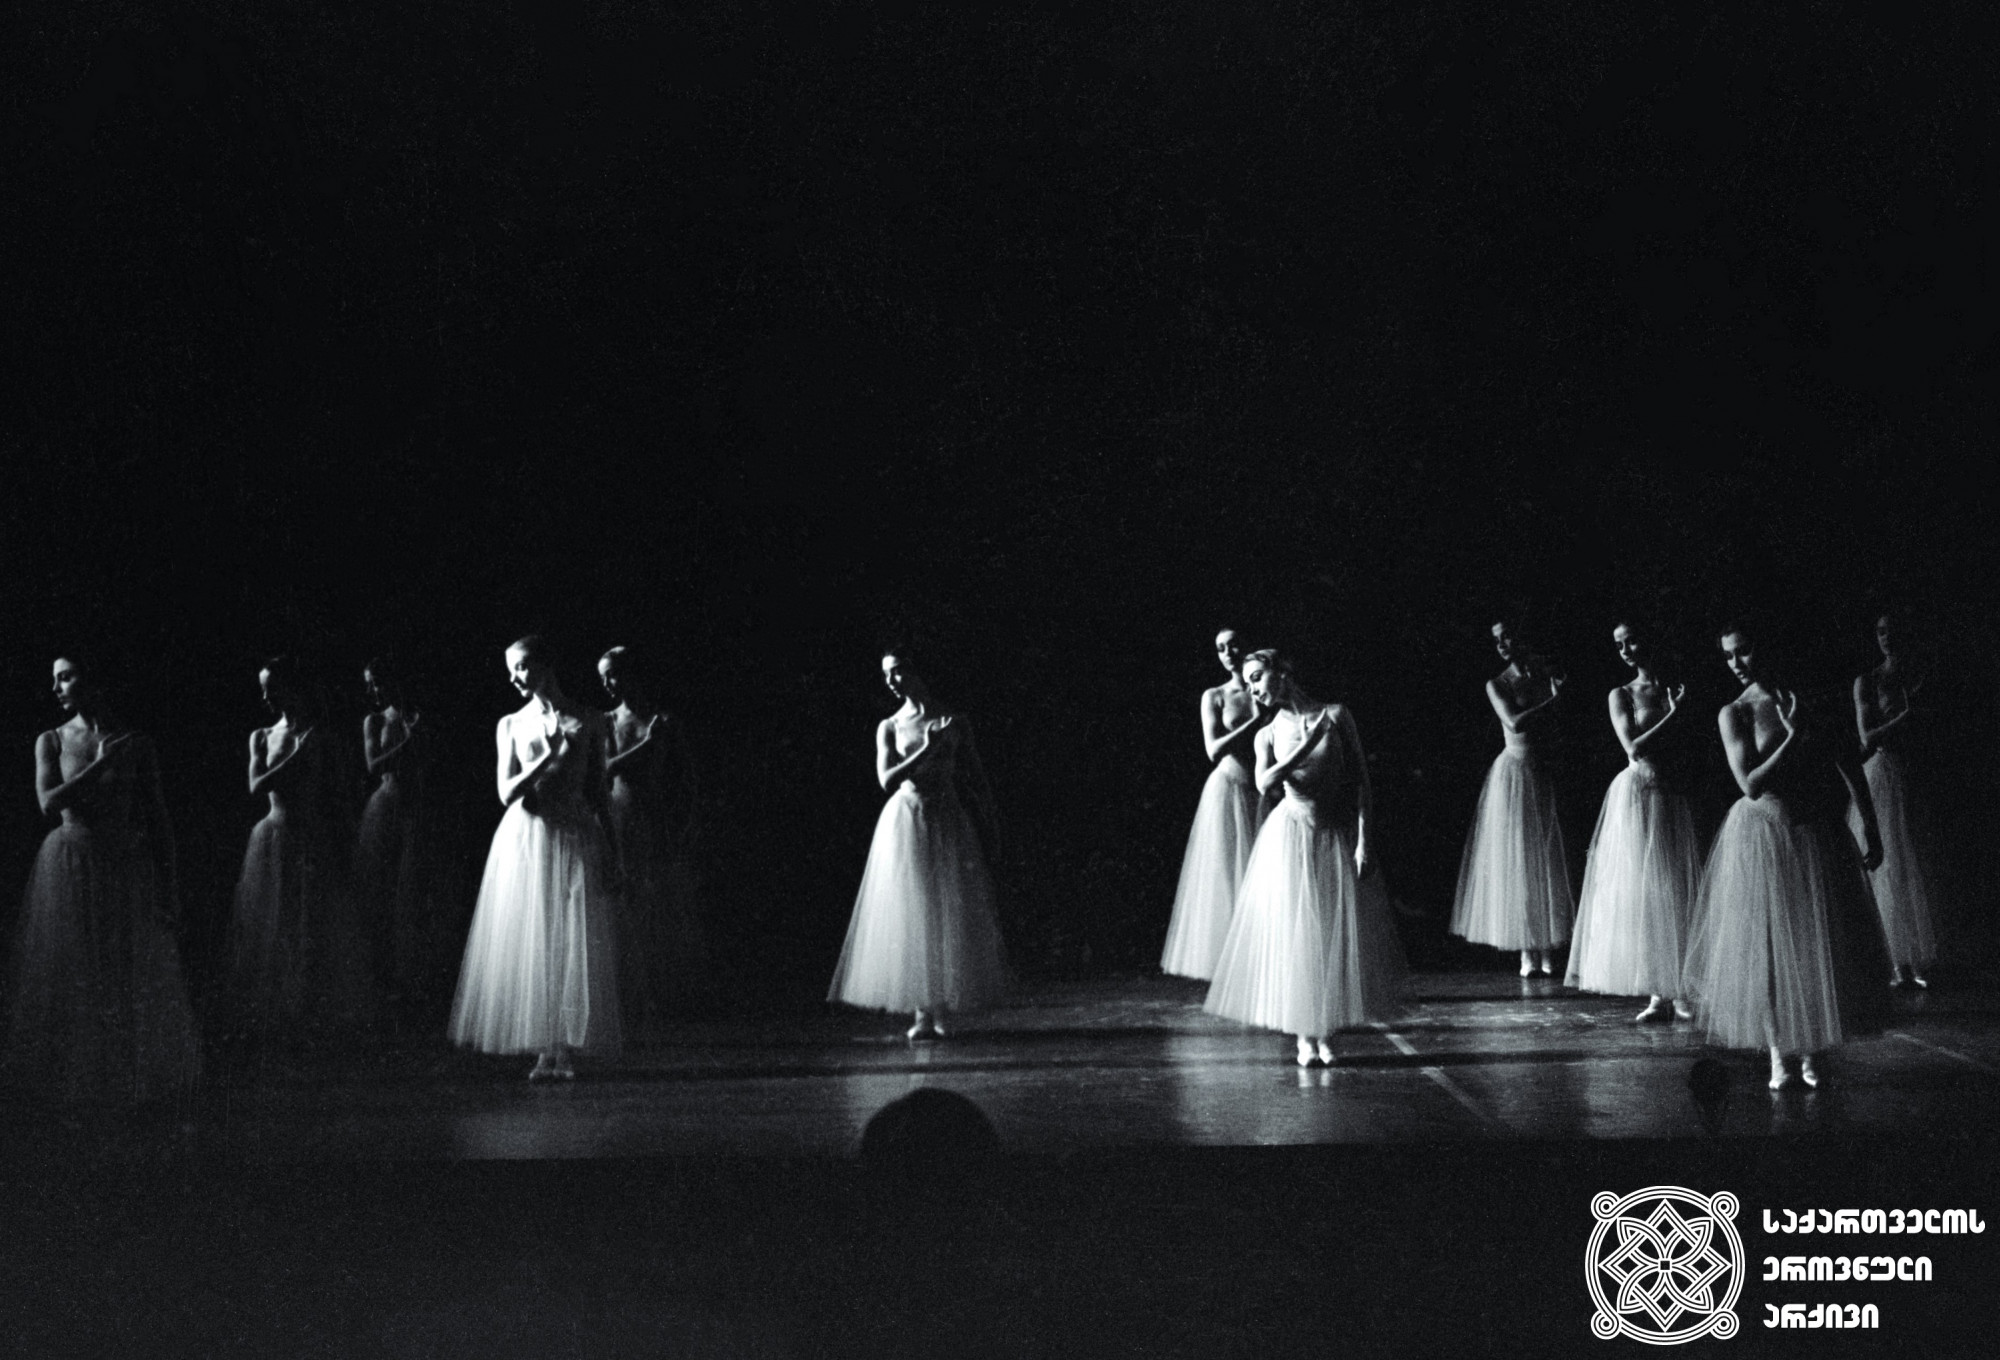 ნიუ-იორკ სიტის ბალეტის გასტროლები თბილისში. ხელმძღვანელი ჯორჯ ბალანჩინი. <br>1962 წელი. ს. ონანოვის ფოტო.  <br>
The New York City Ballet tours Tbilisi. Director George Balanchine. 
 <br> 1962. Photo by S. Onanov.